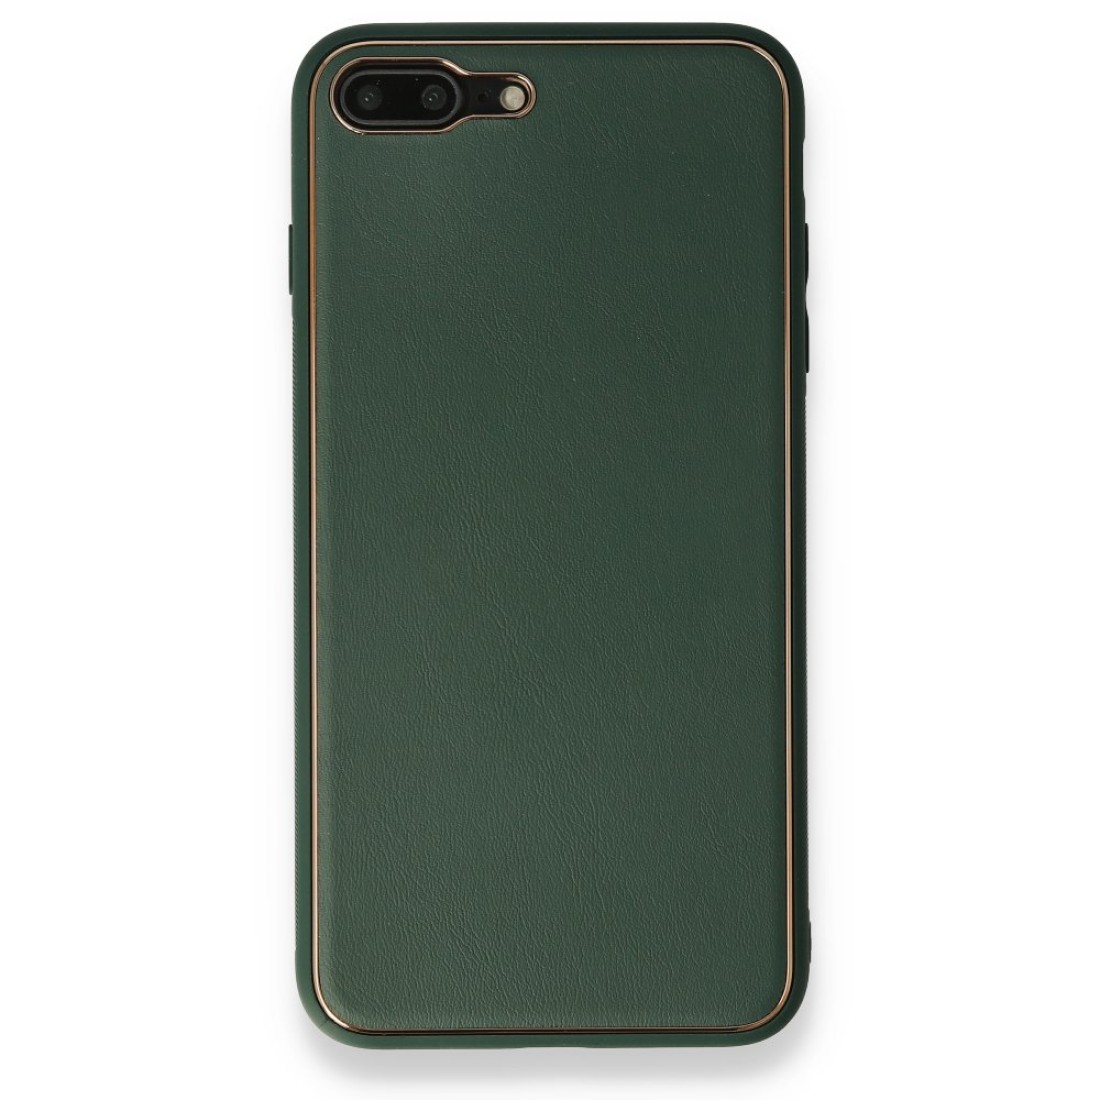 Apple iPhone 7 Plus Kılıf Coco Deri Silikon Kapak - Yeşil